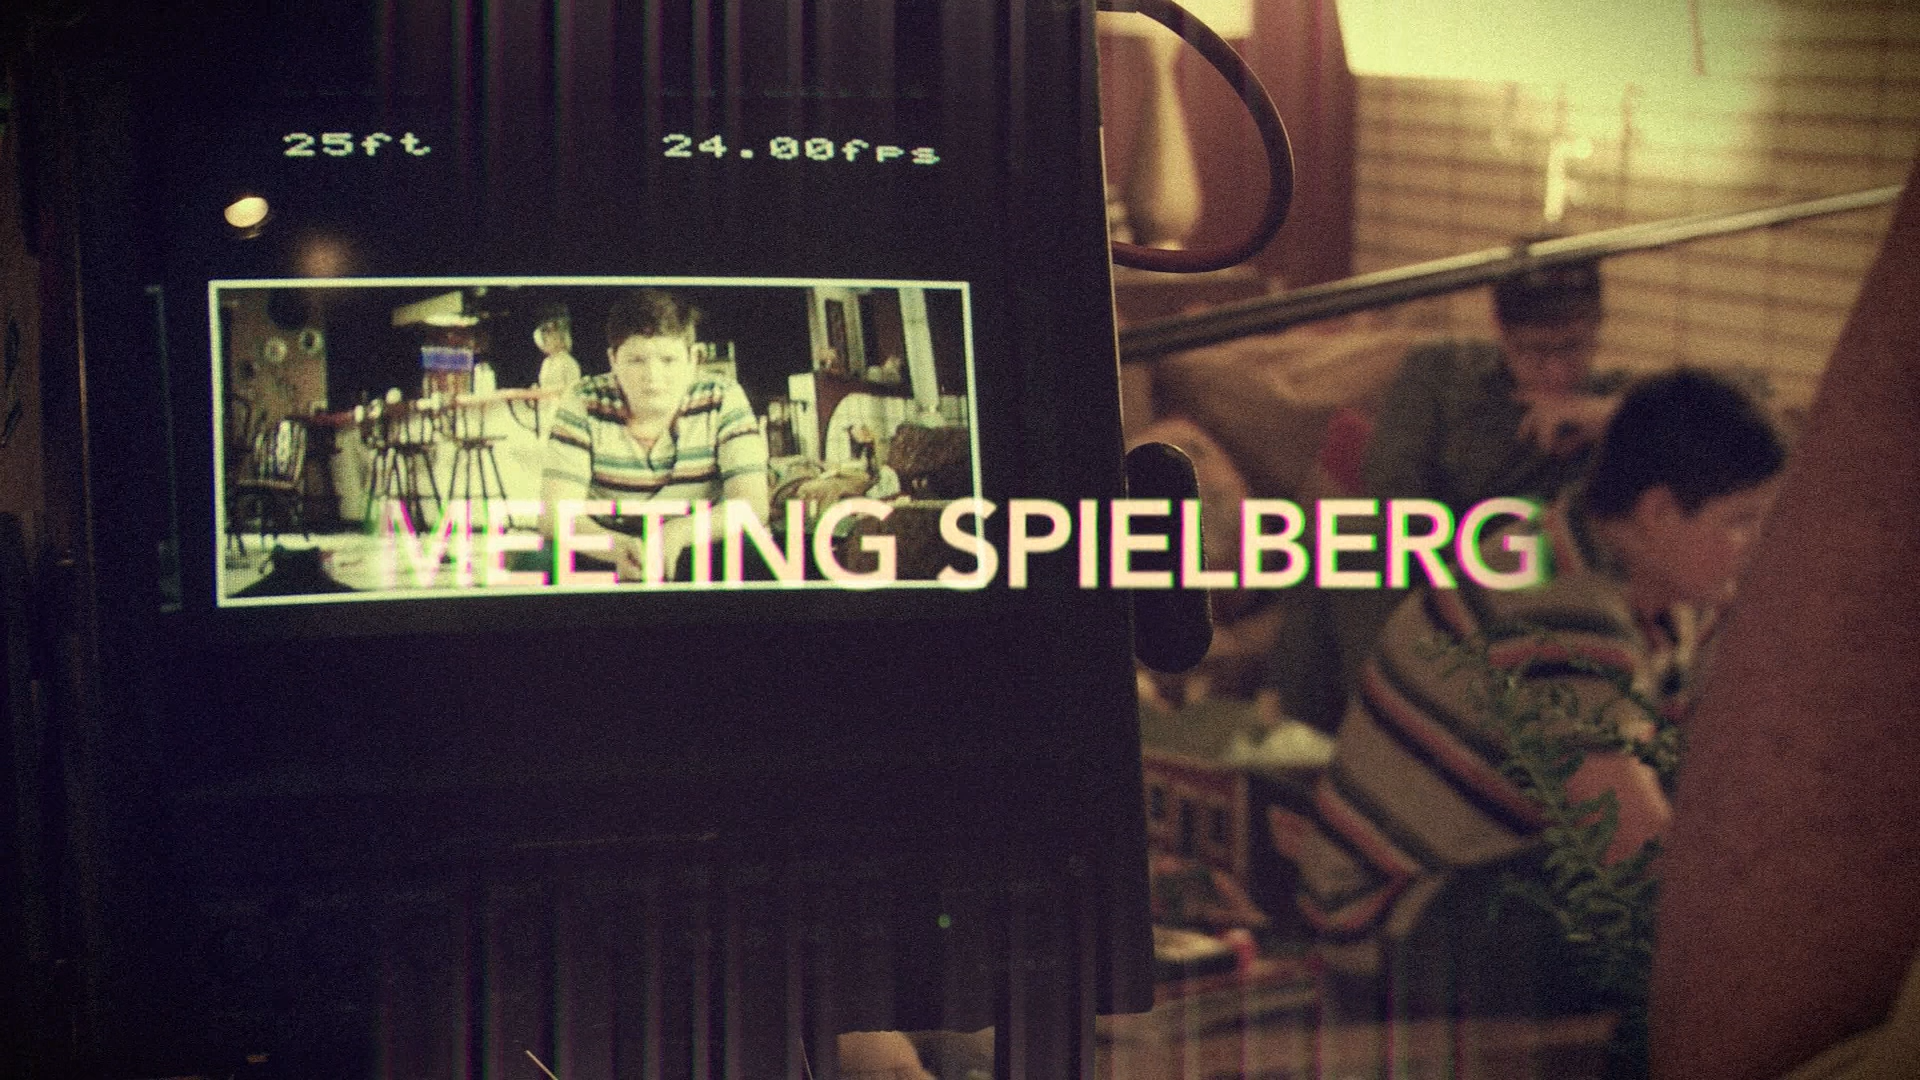 Meeting Spielberg